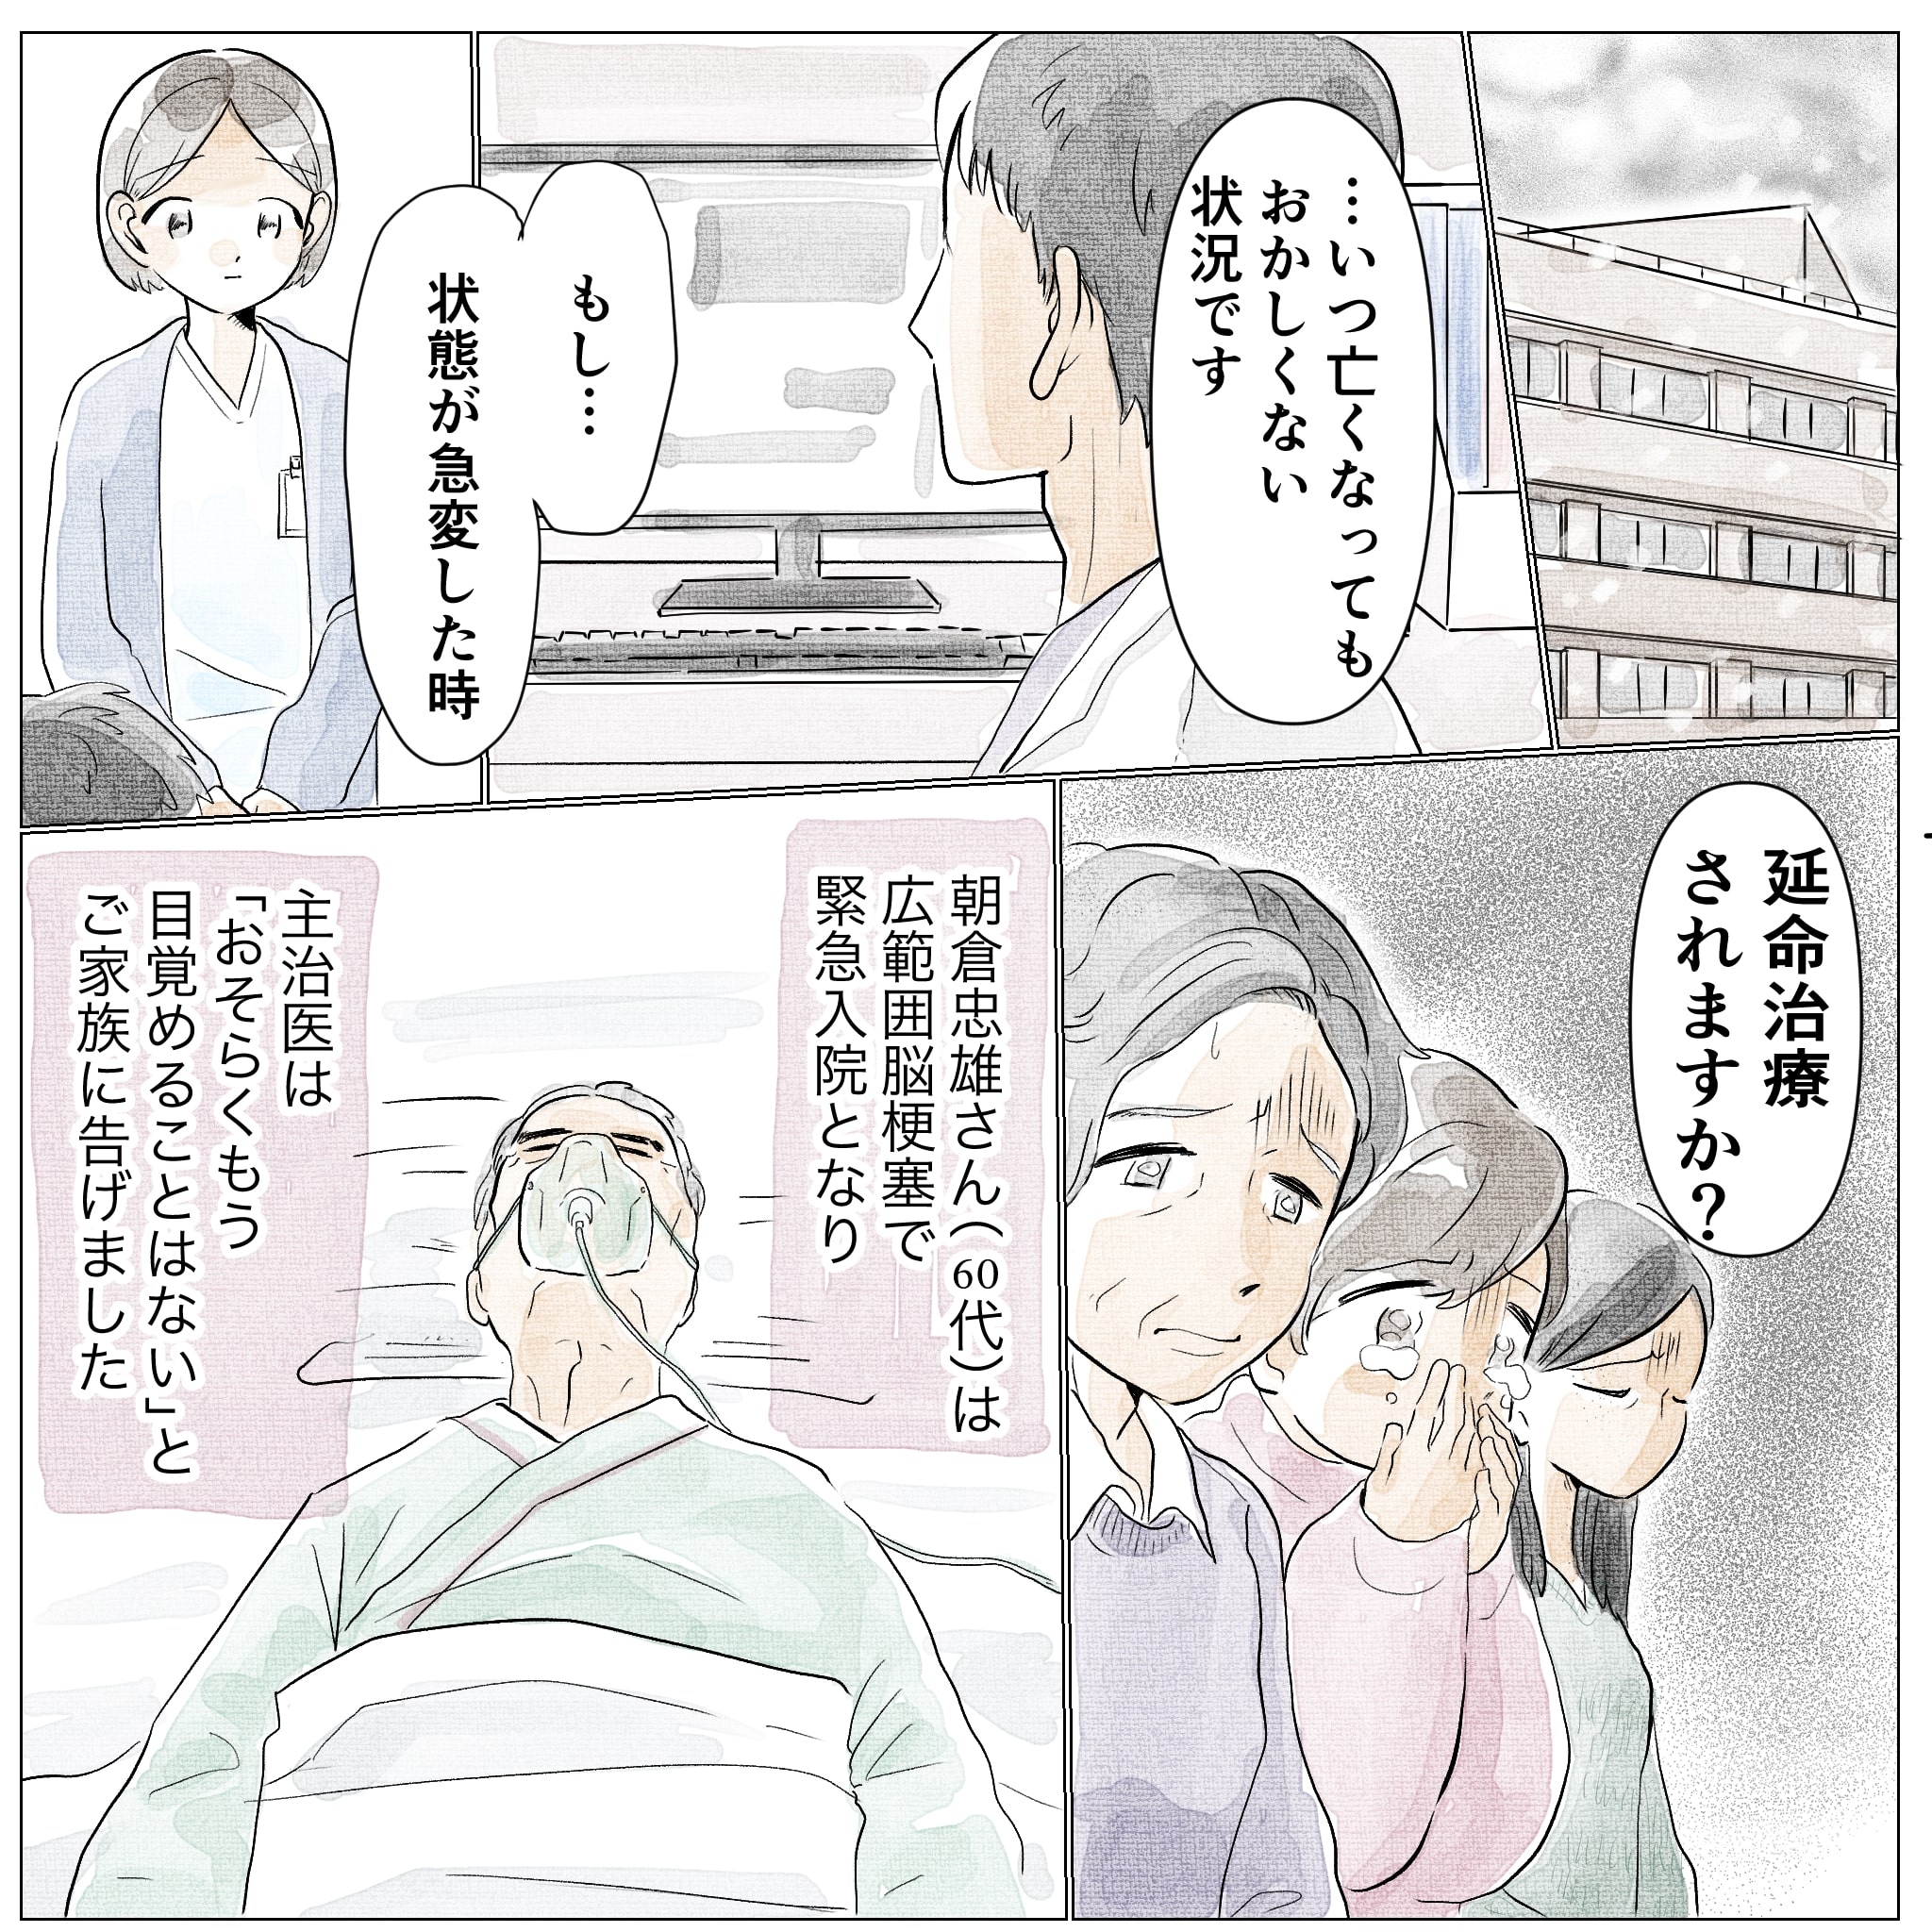 脳梗塞で緊急入院された朝倉さんはもう目覚めることはないと家族に告げられた